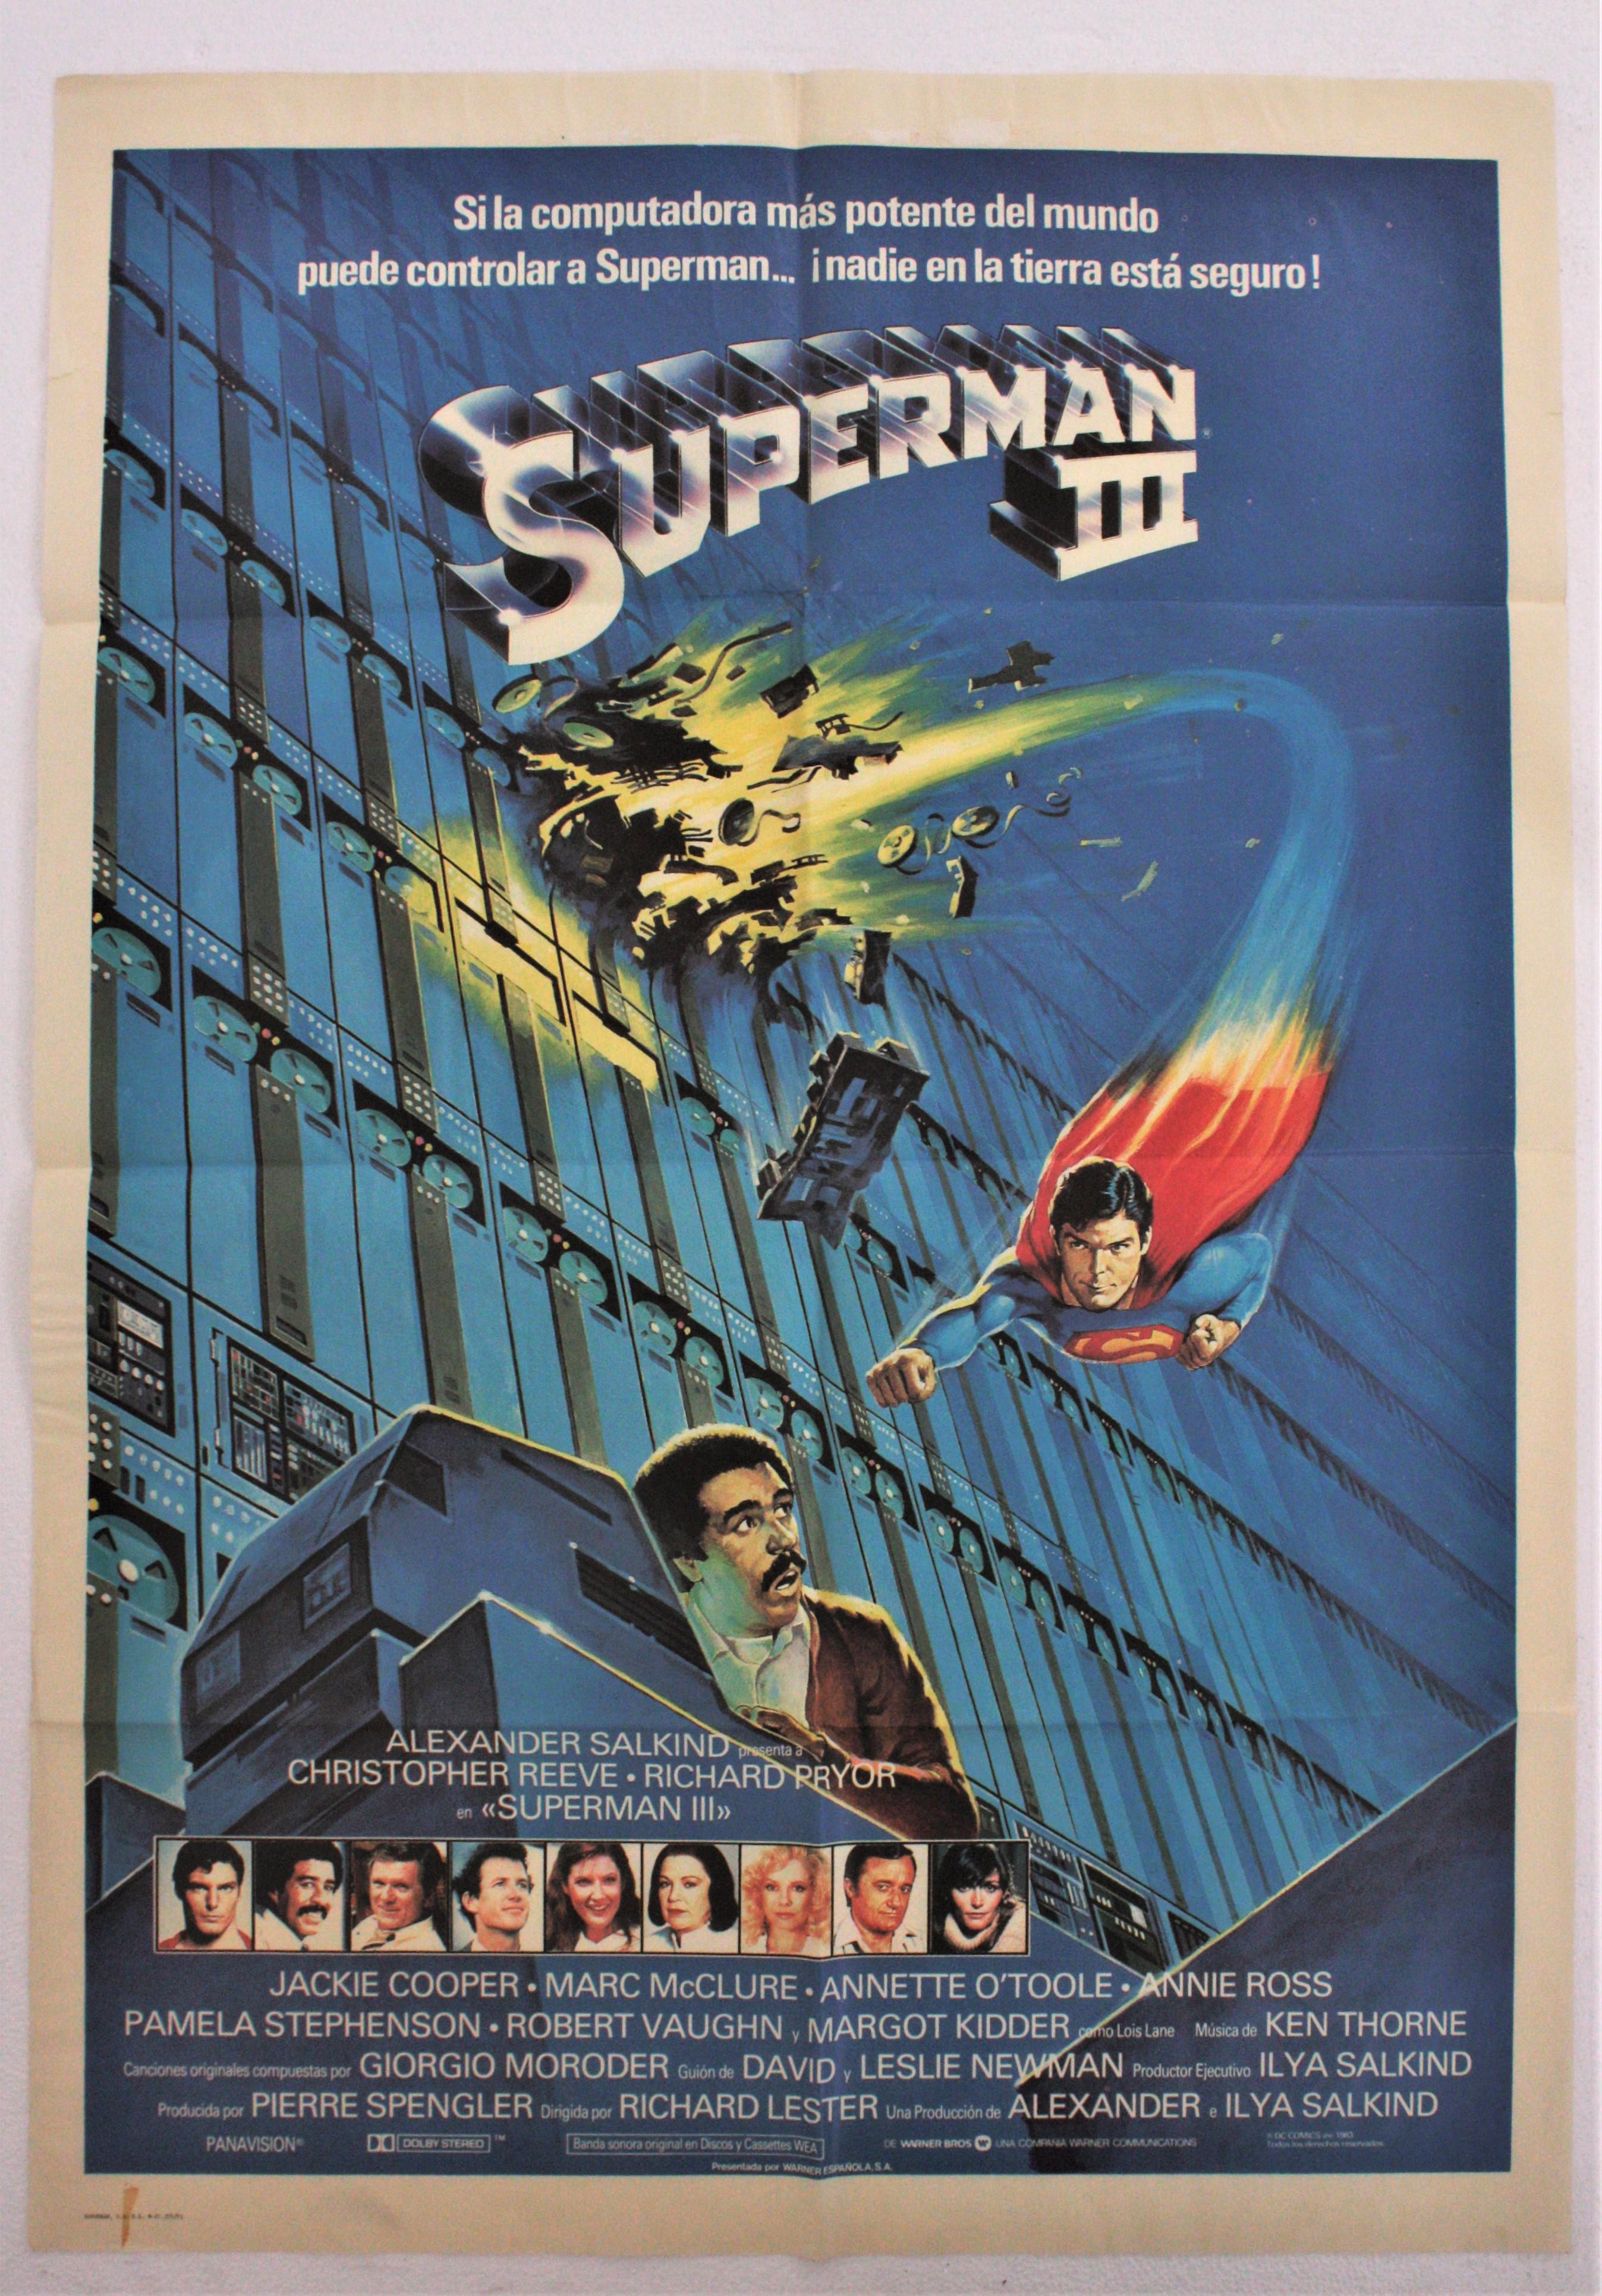 Affiche originale non encadrée du film espagnol Superman III, 1983
Imprimé par Novograf
Bon état avec quelques déchirures et marques de pliage.
Mesures : 100 cm H x 70 cm L  // 39,37 in H x 27,55 in W